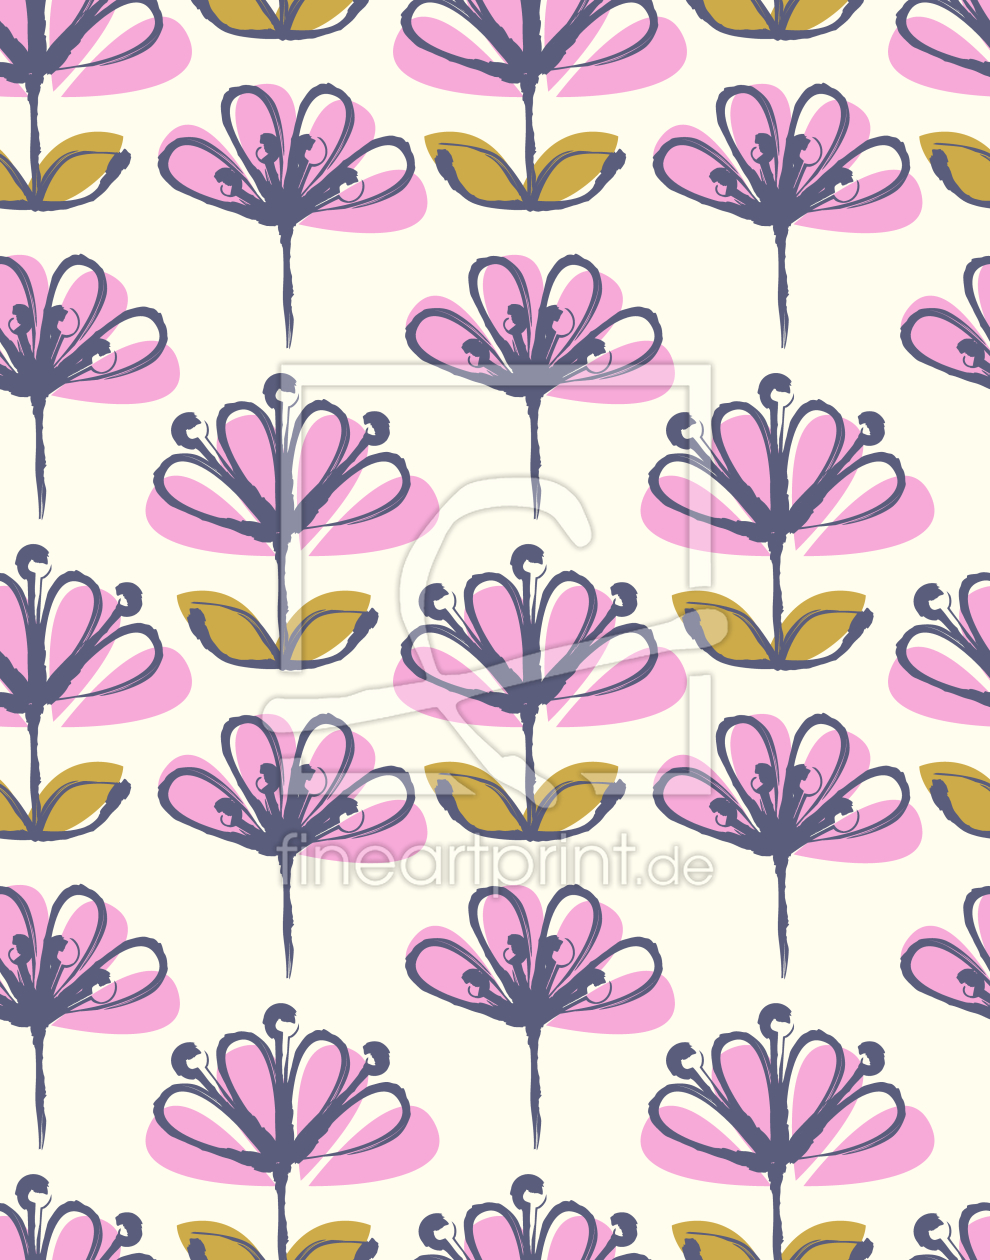 Bild-Nr.: 9015082 Teichblüten erstellt von patterndesigns-com